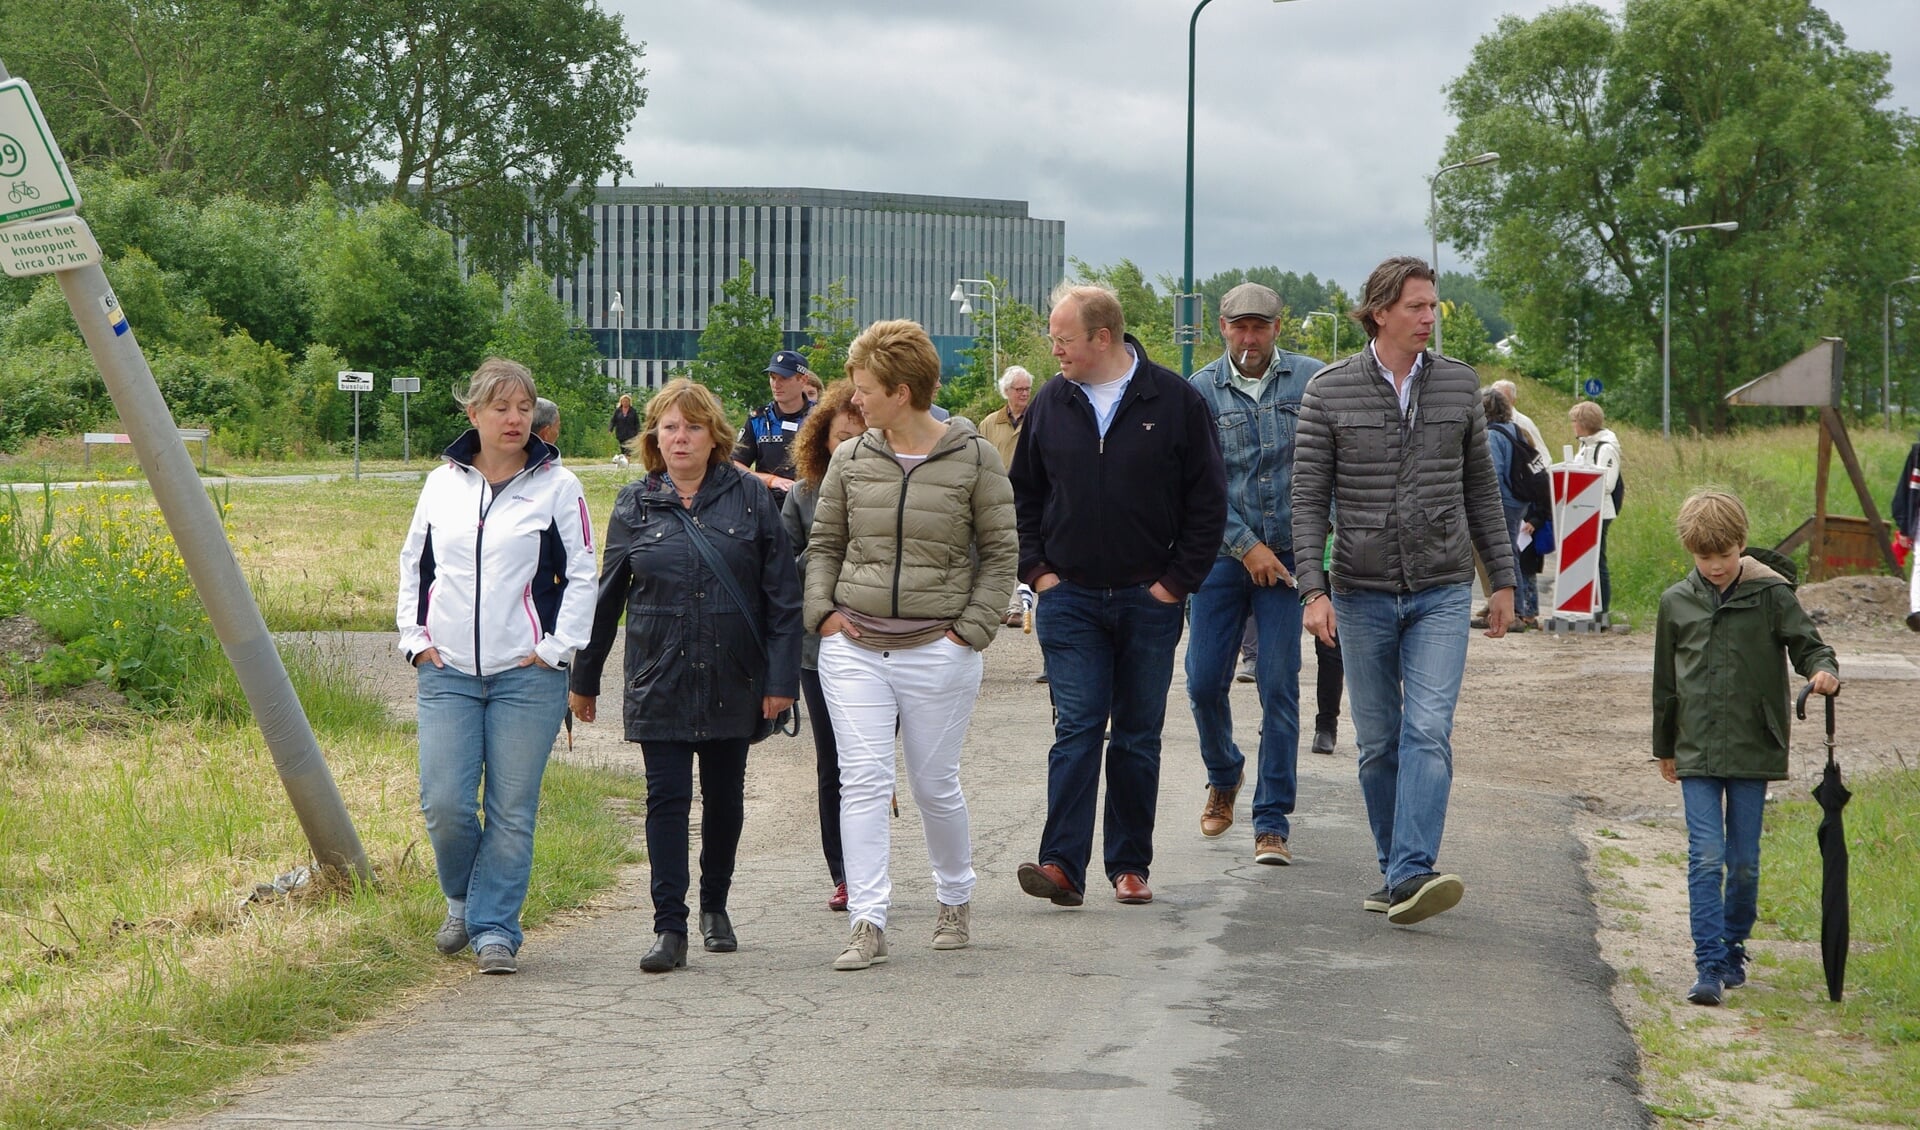 Wijkbewoners en raadsleden wandelend op de Rhijnhofweg in juni 2016. | Archieffoto Willemien Timmers